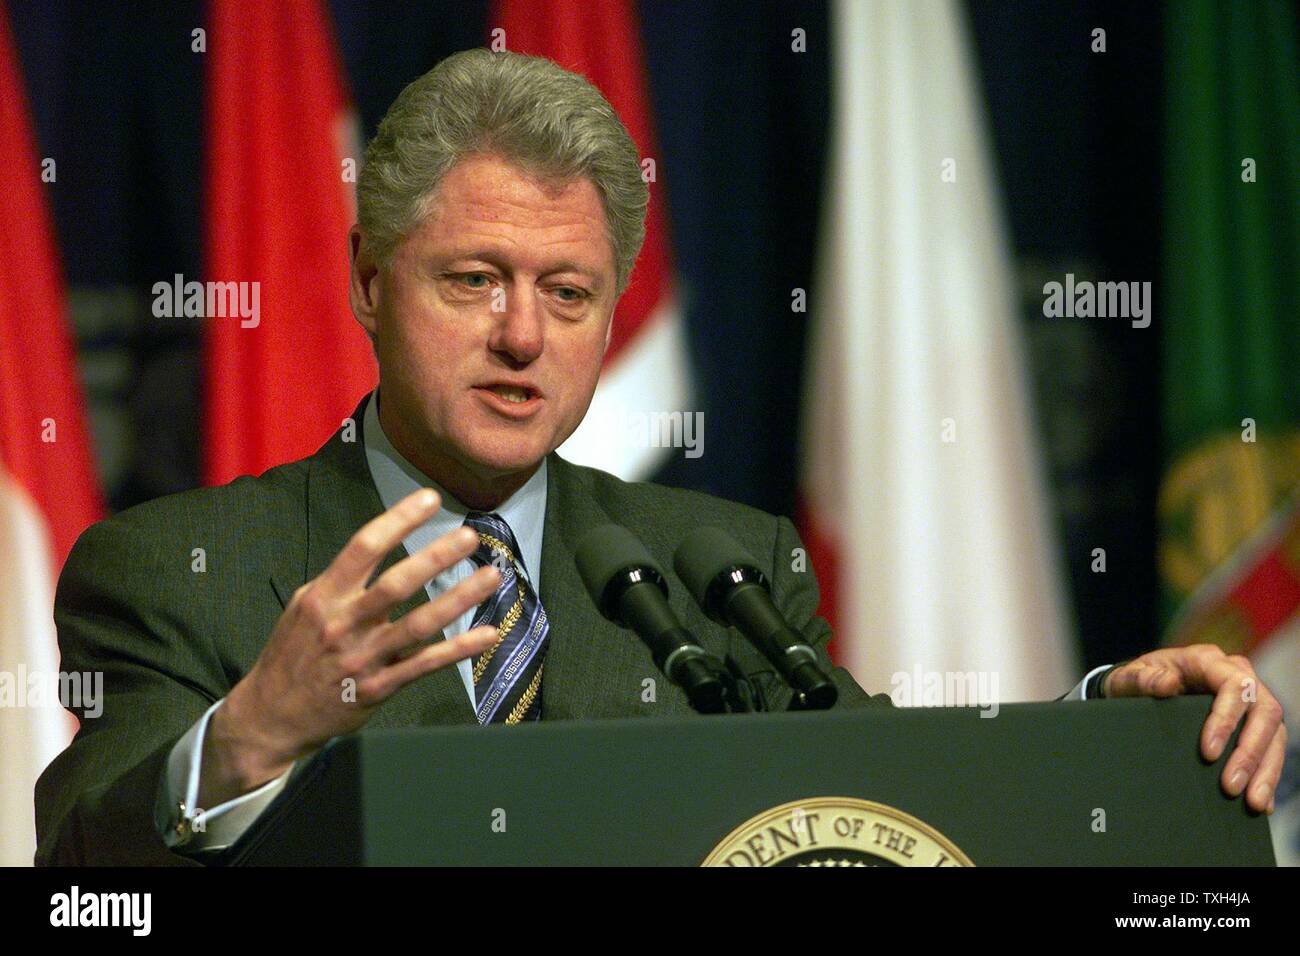 William Jefferson "Bill" Clinton, 42e président des États-Unis d'Amérique (1993-2001), donnant une conférence de presse à l'Amphithéâtre de l'ITC Reagan Building Banque D'Images